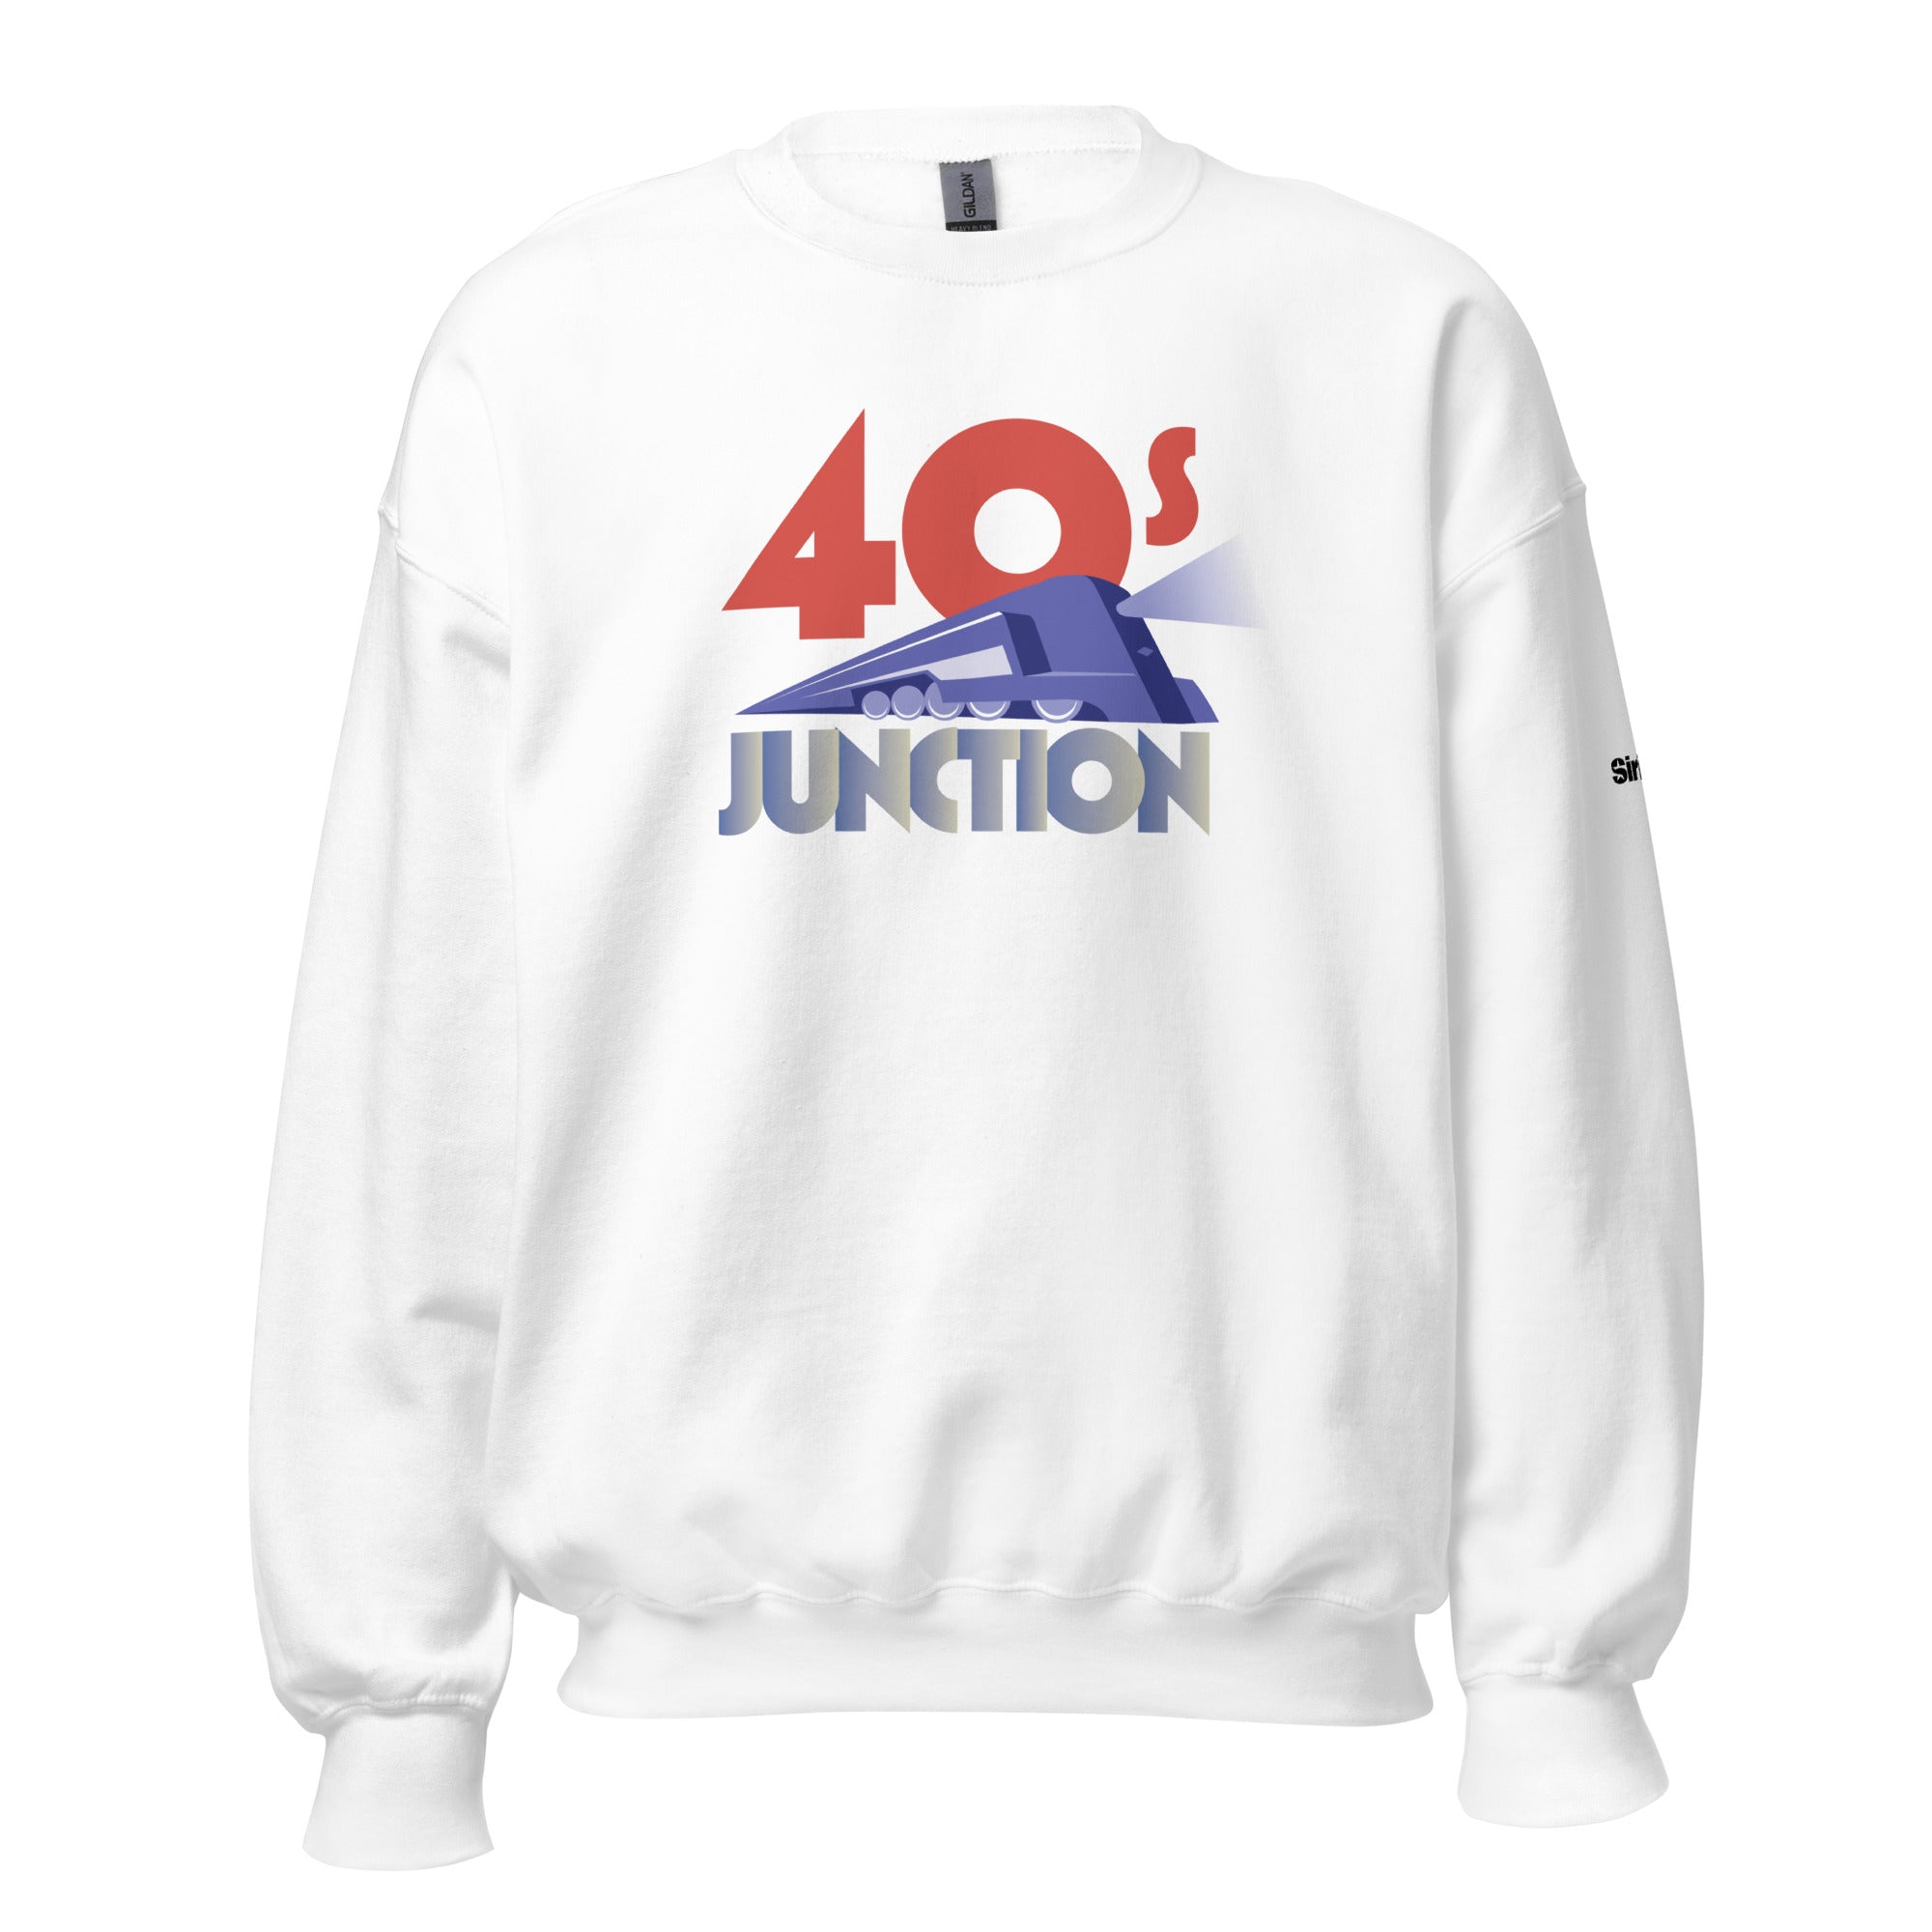 40s Junction: Sweatshirt (White)